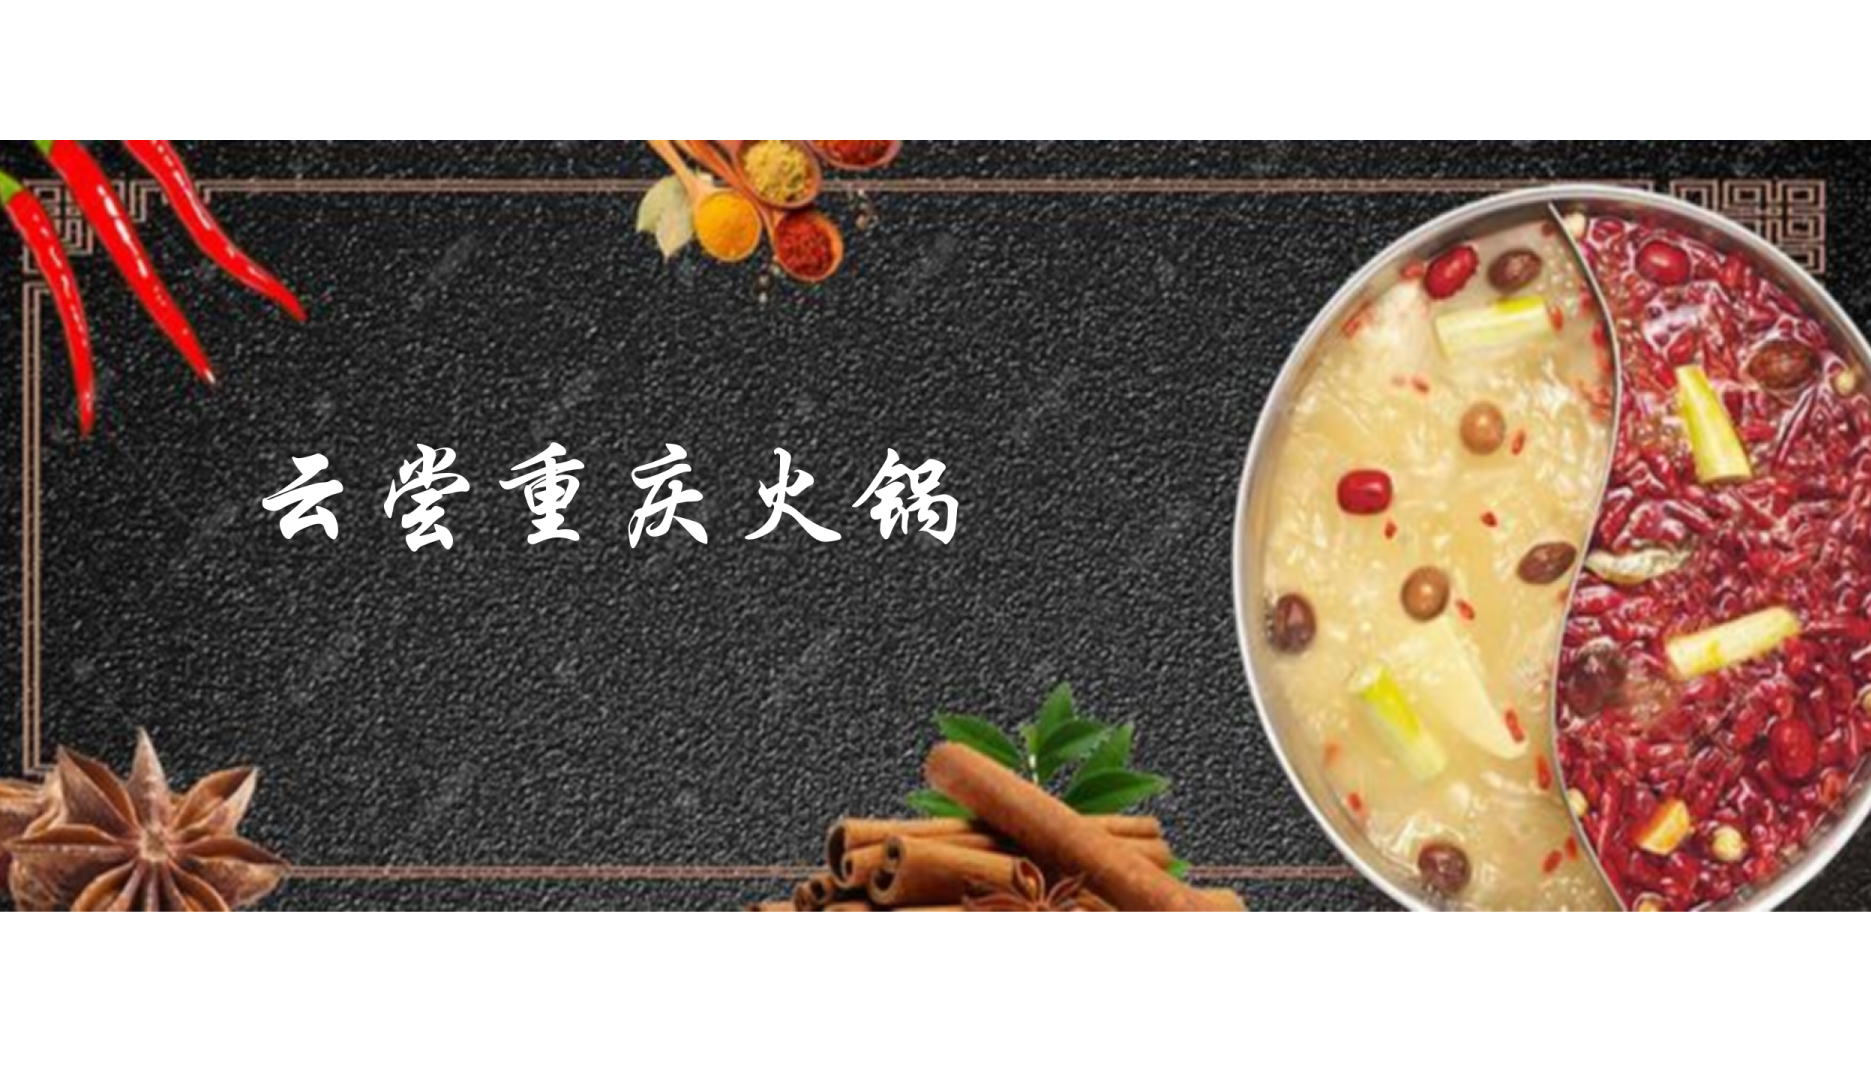 Virtual Taste of Chongqing Hotpot